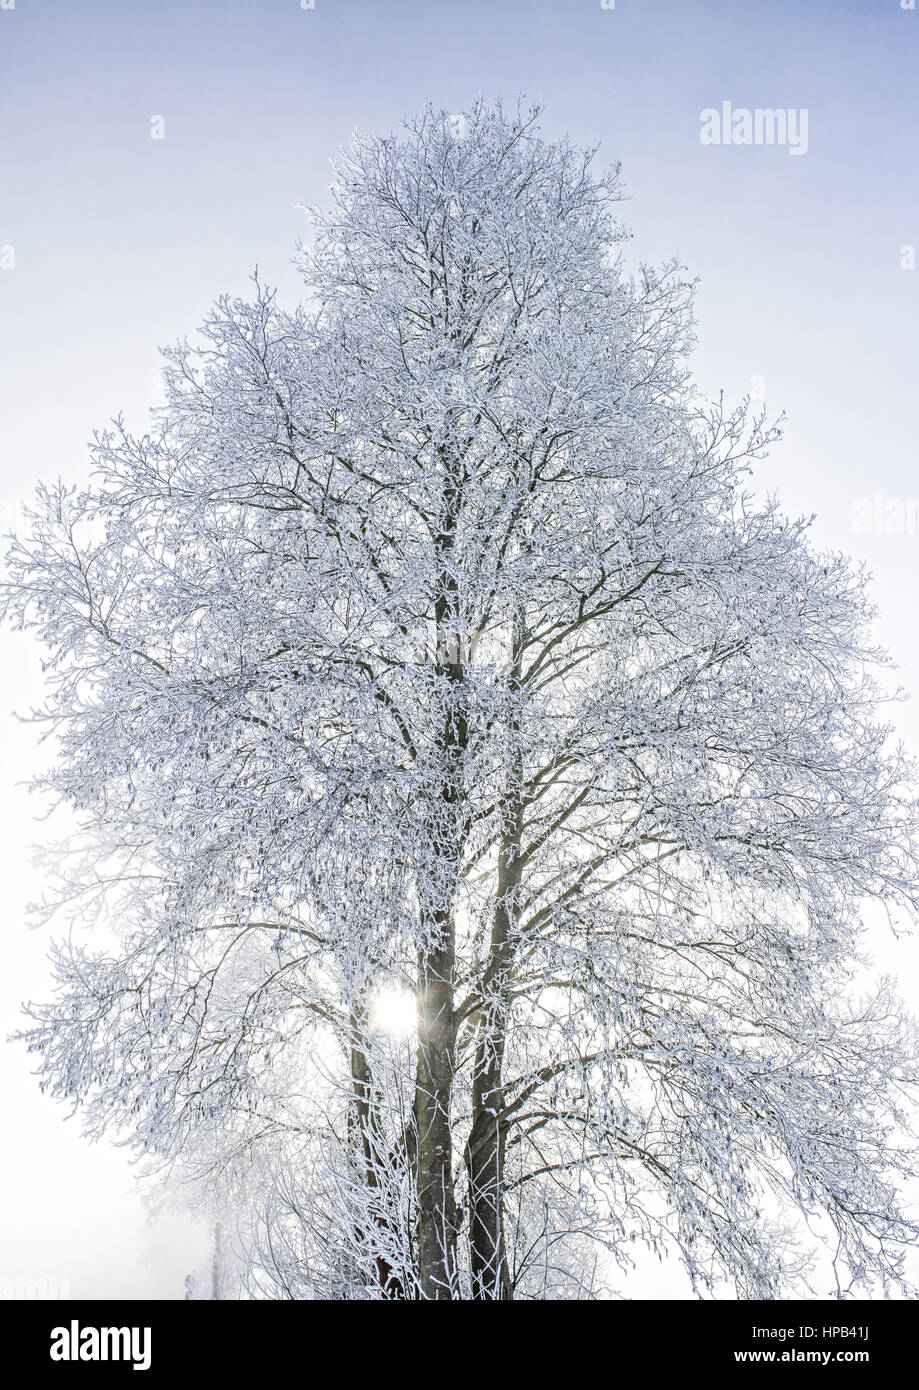 Winterlicher Baum mit Raureif und Nebel Stock Photo